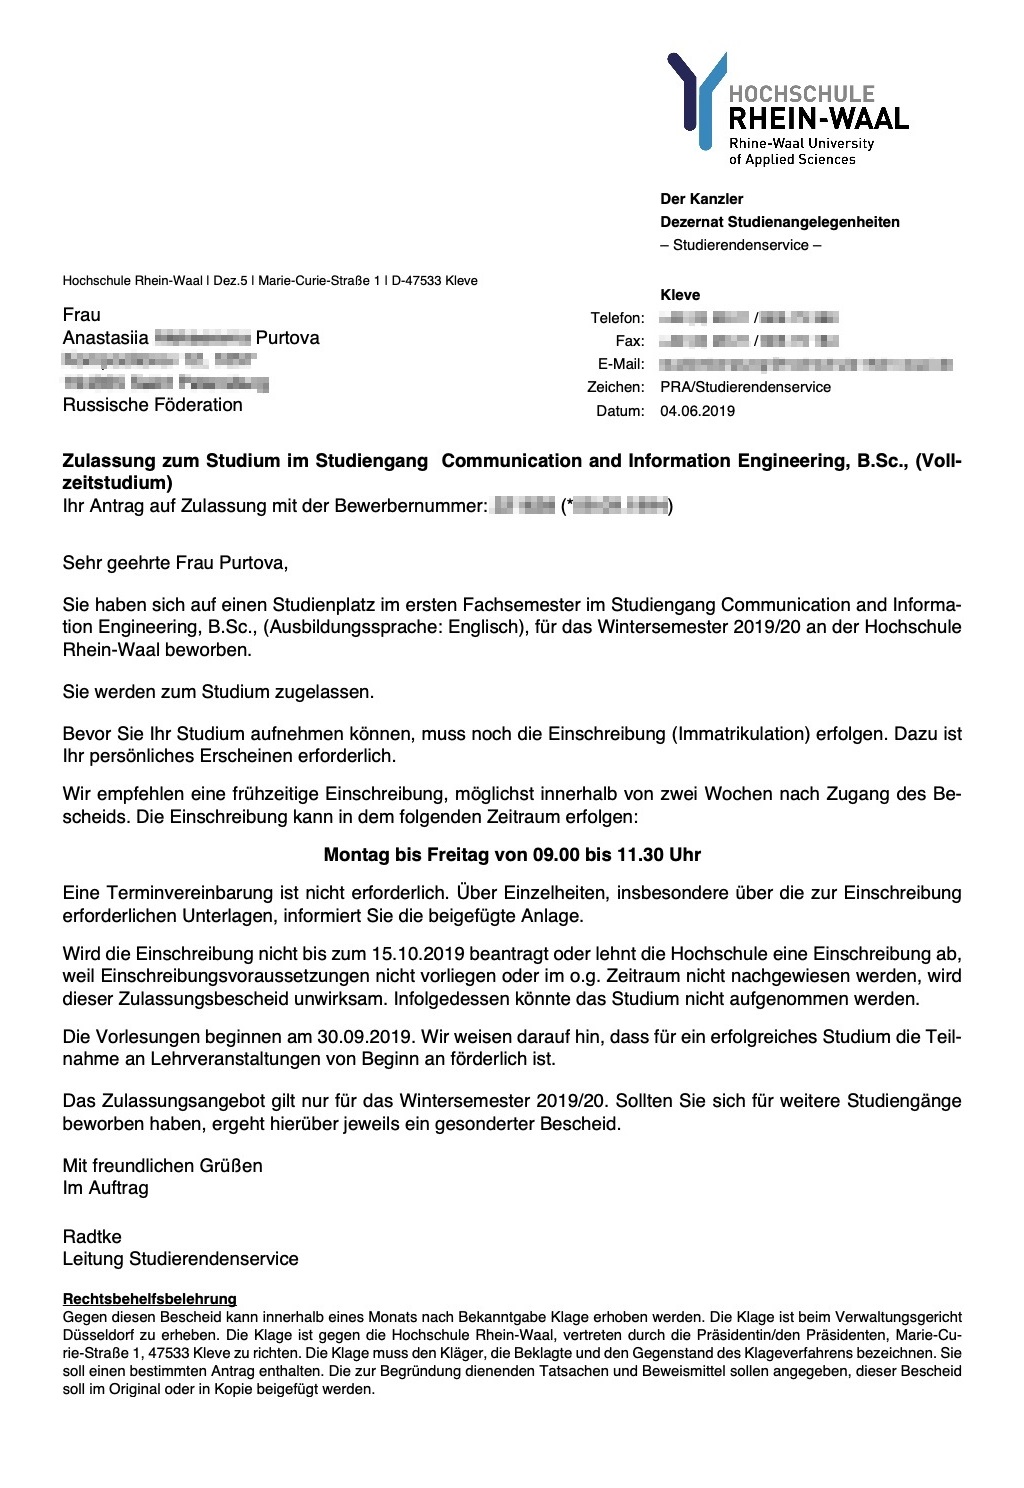 Письмо-приглашение от Рейн‑Ваальского университета. Я подала туда документы напрямую через uni‑assist